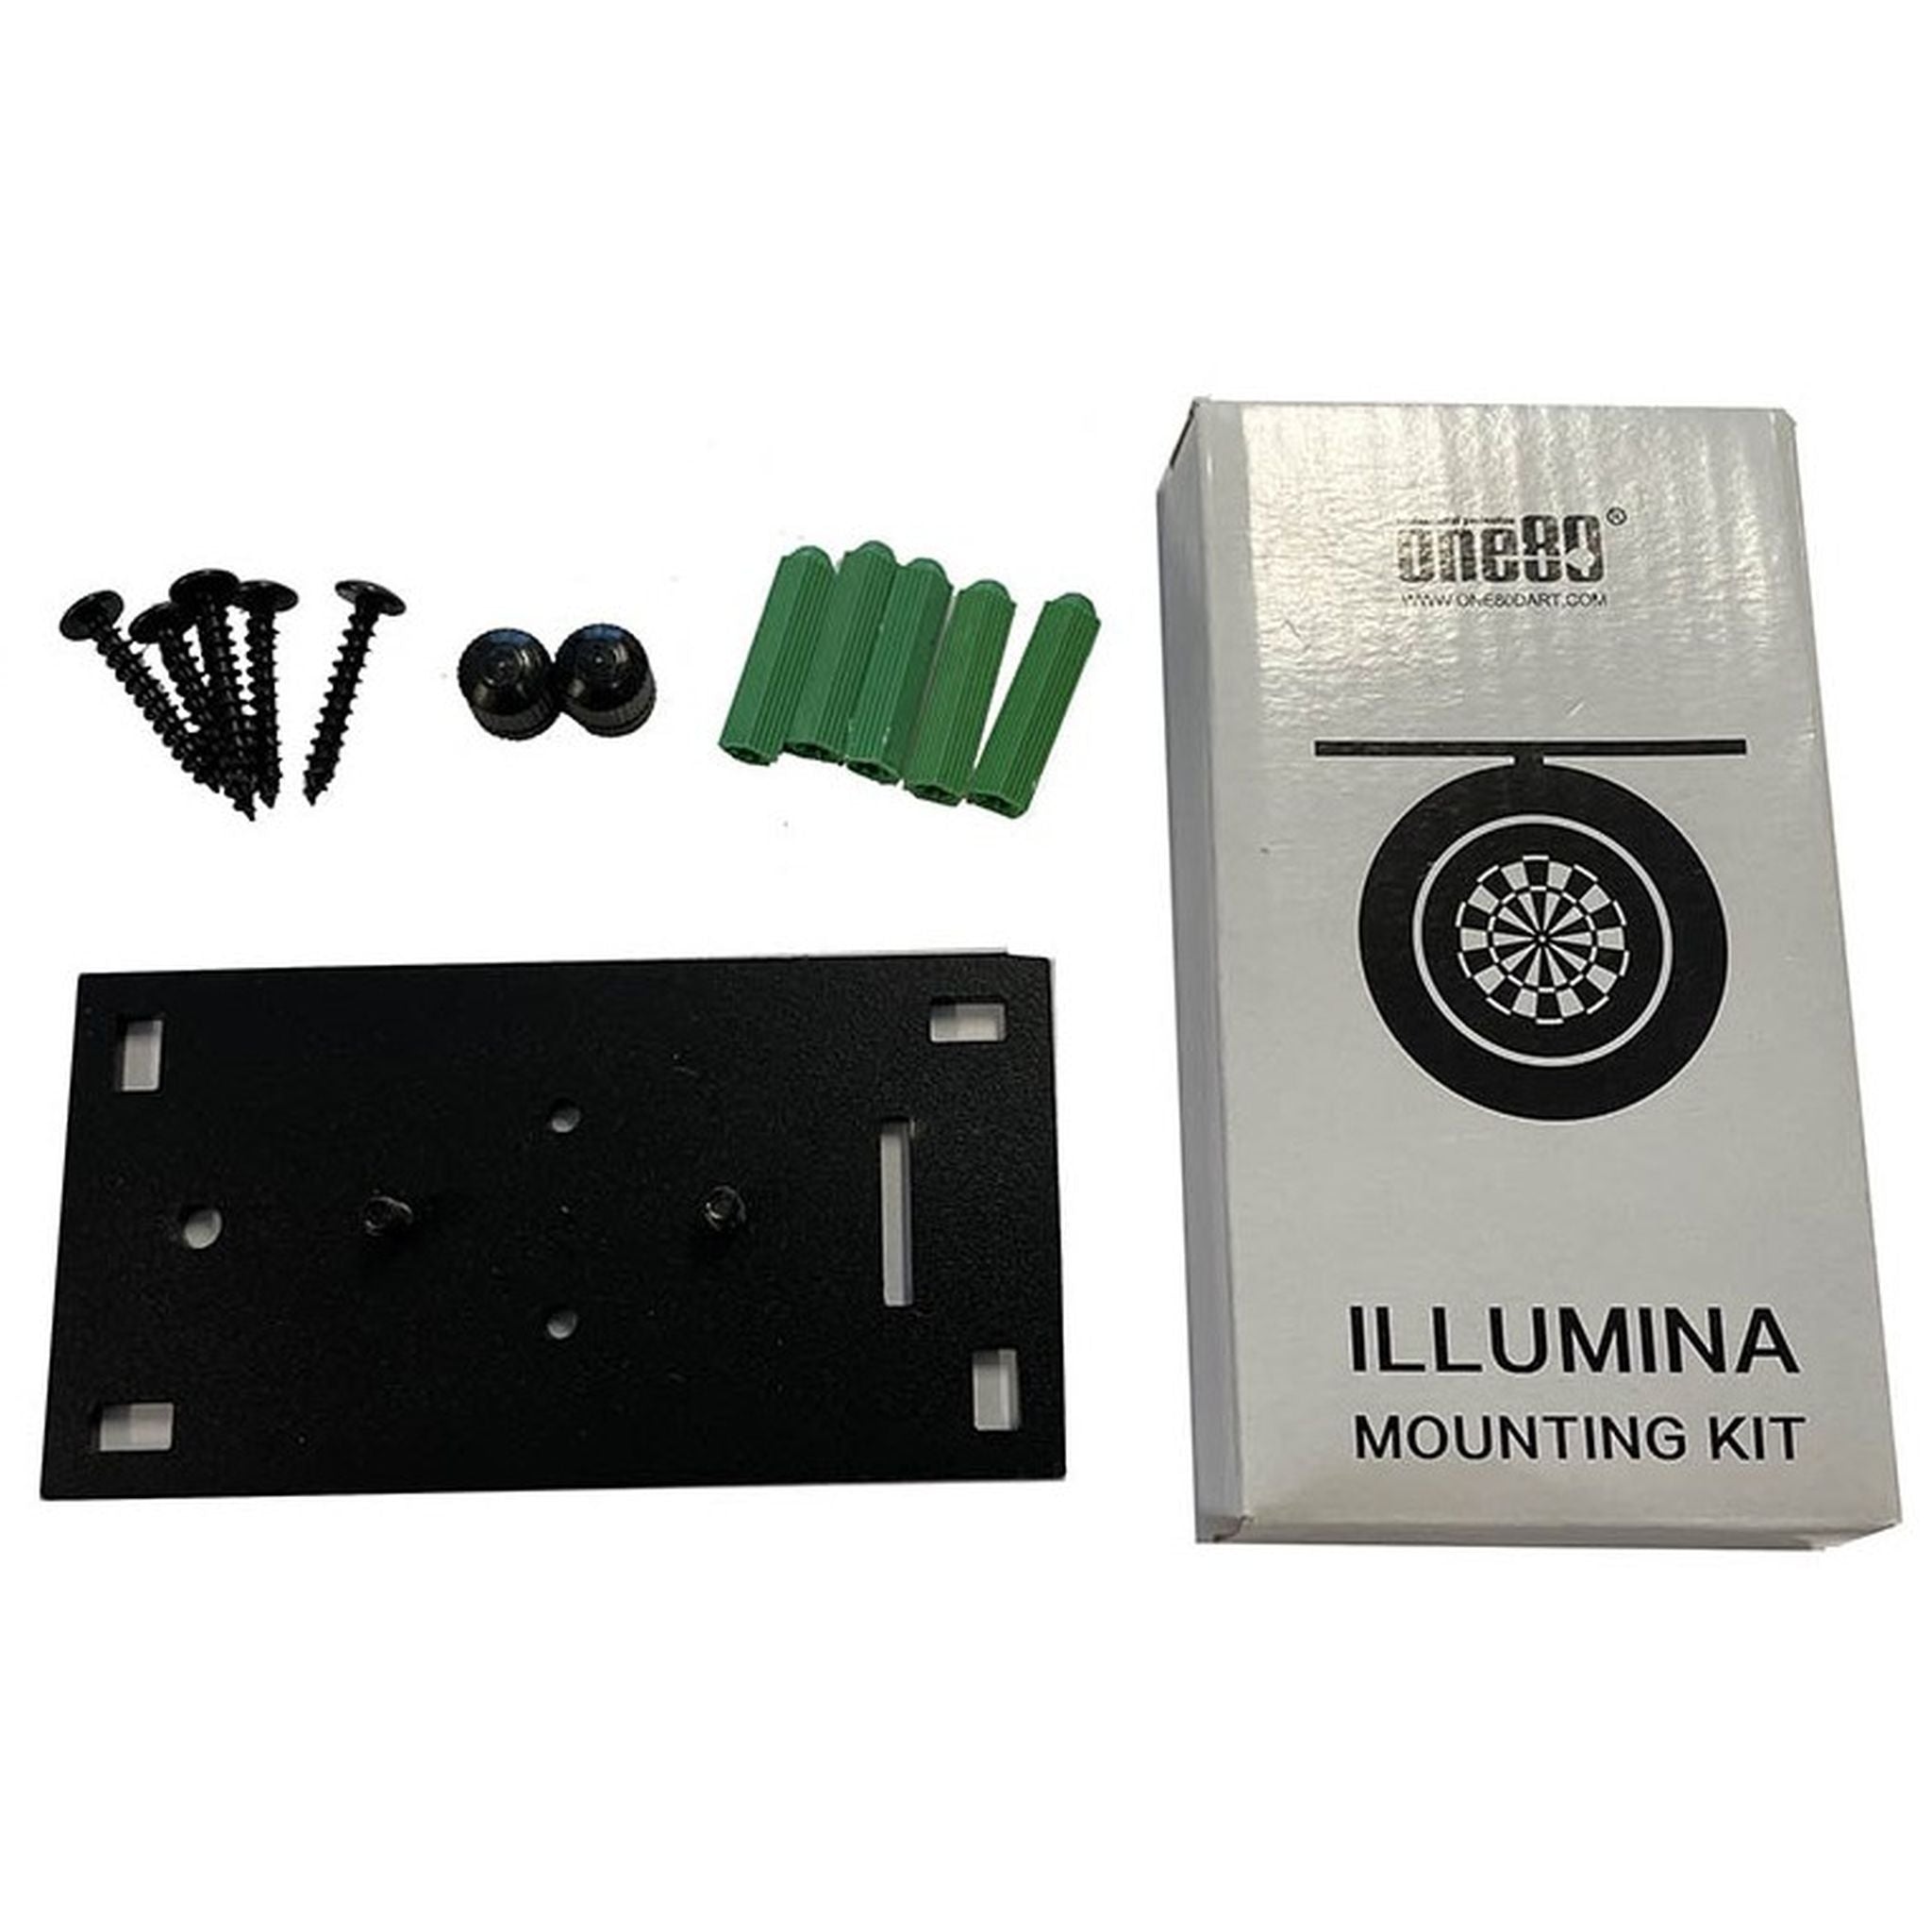 ONE80 Illumina Mounting Kit